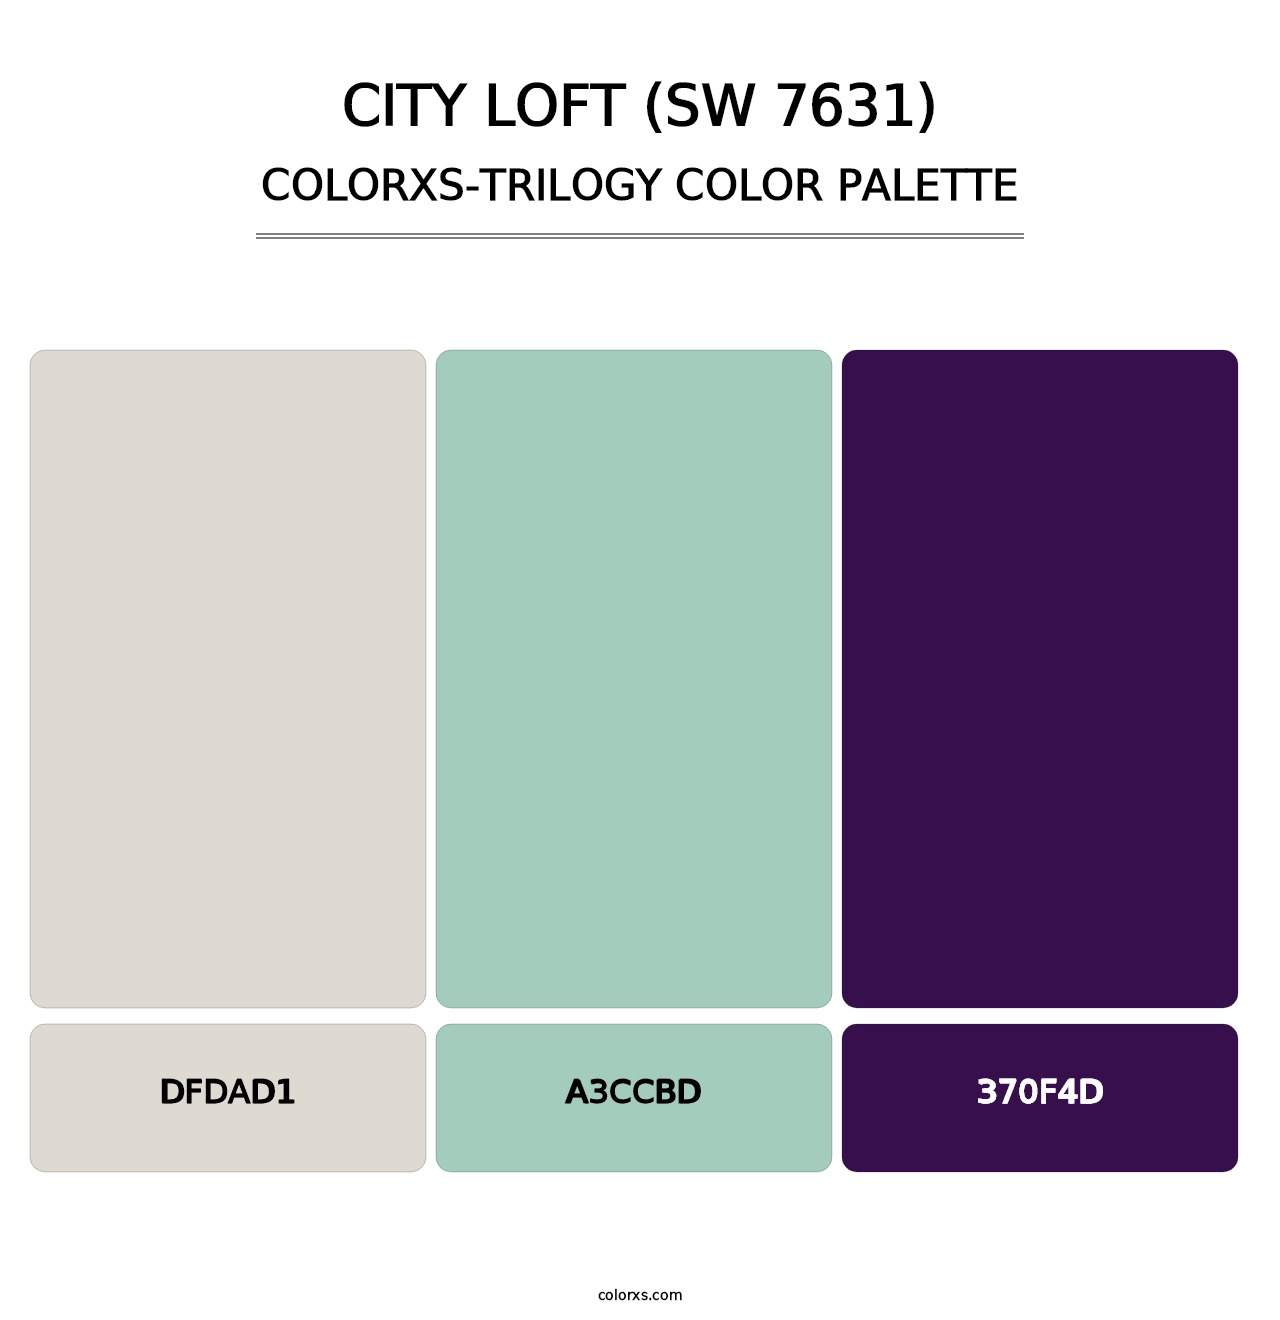 City Loft (SW 7631) - Colorxs Trilogy Palette